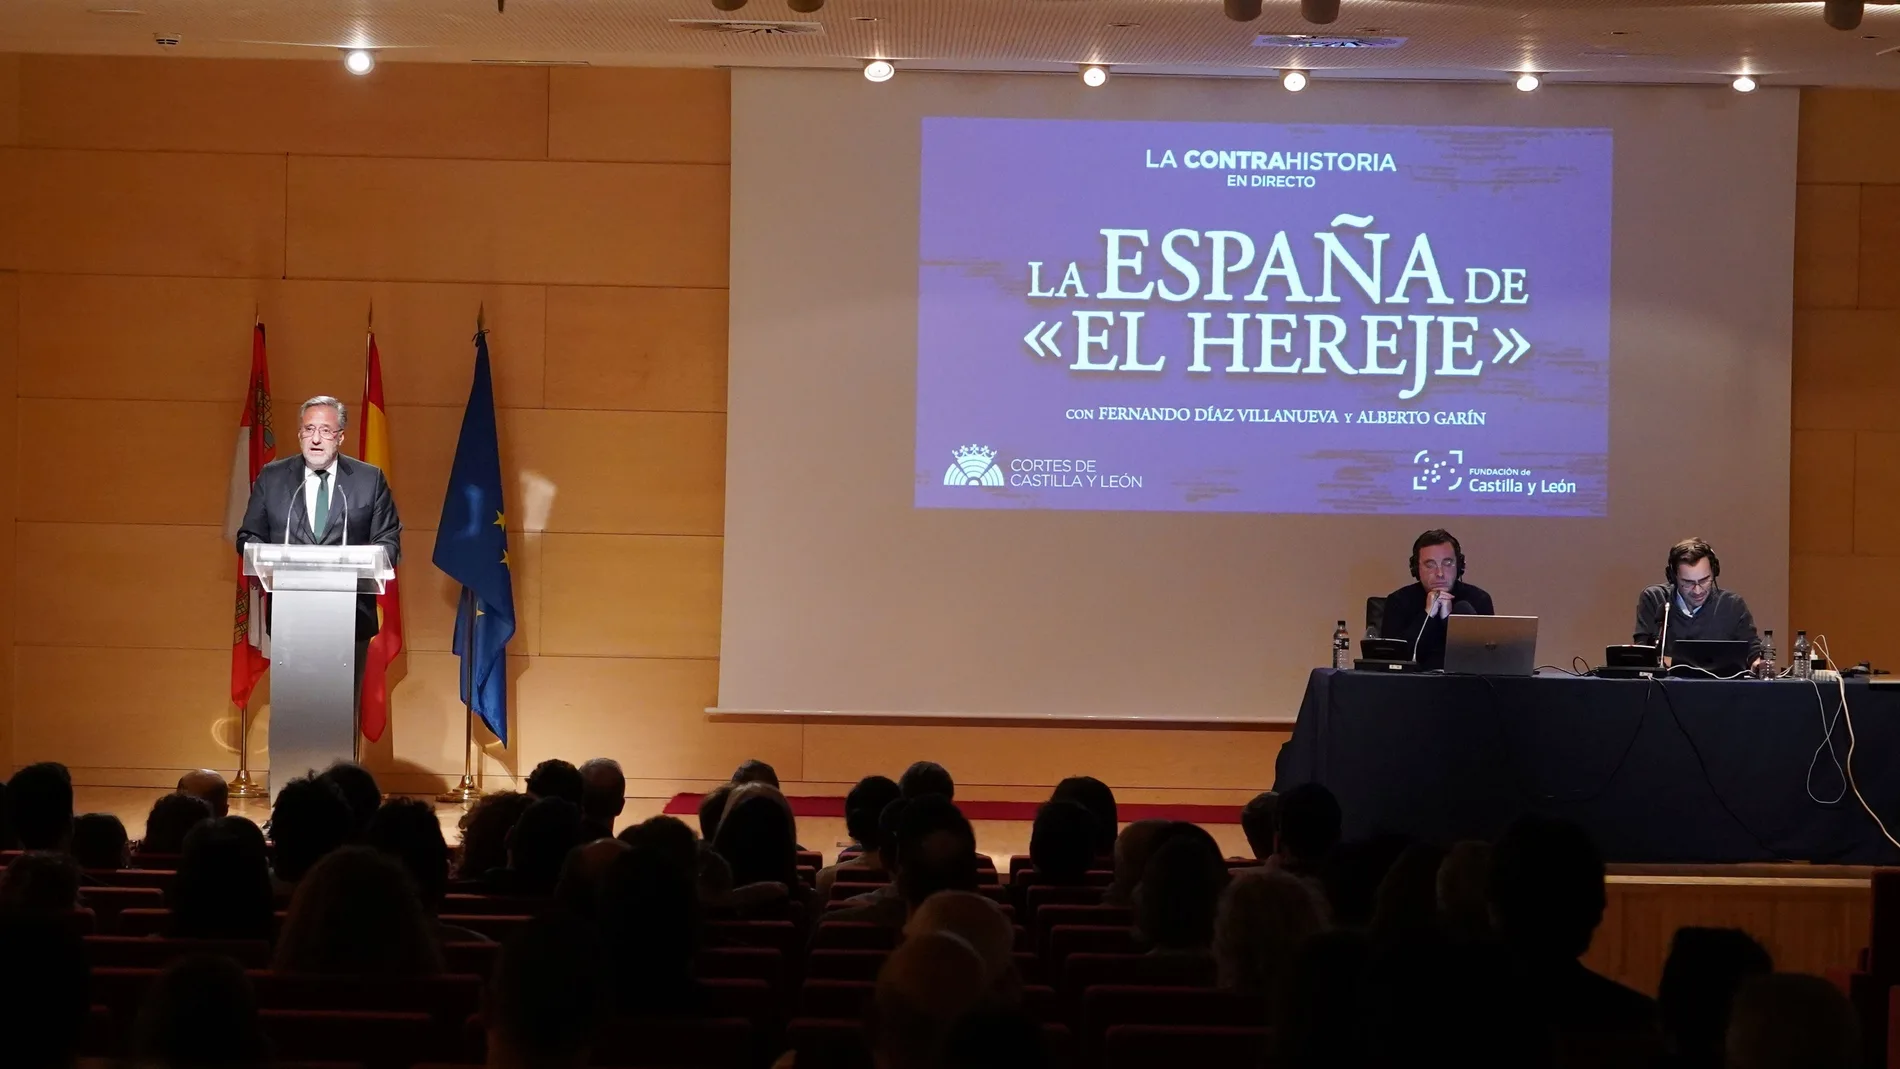 El presidente de las Cortes asiste al podcast en directo de La Contrahistoria, que en esta ocasión se centra en ‘La España de El Hereje’, de la mano de Fernando Díaz Villanueva y Alberto Garín